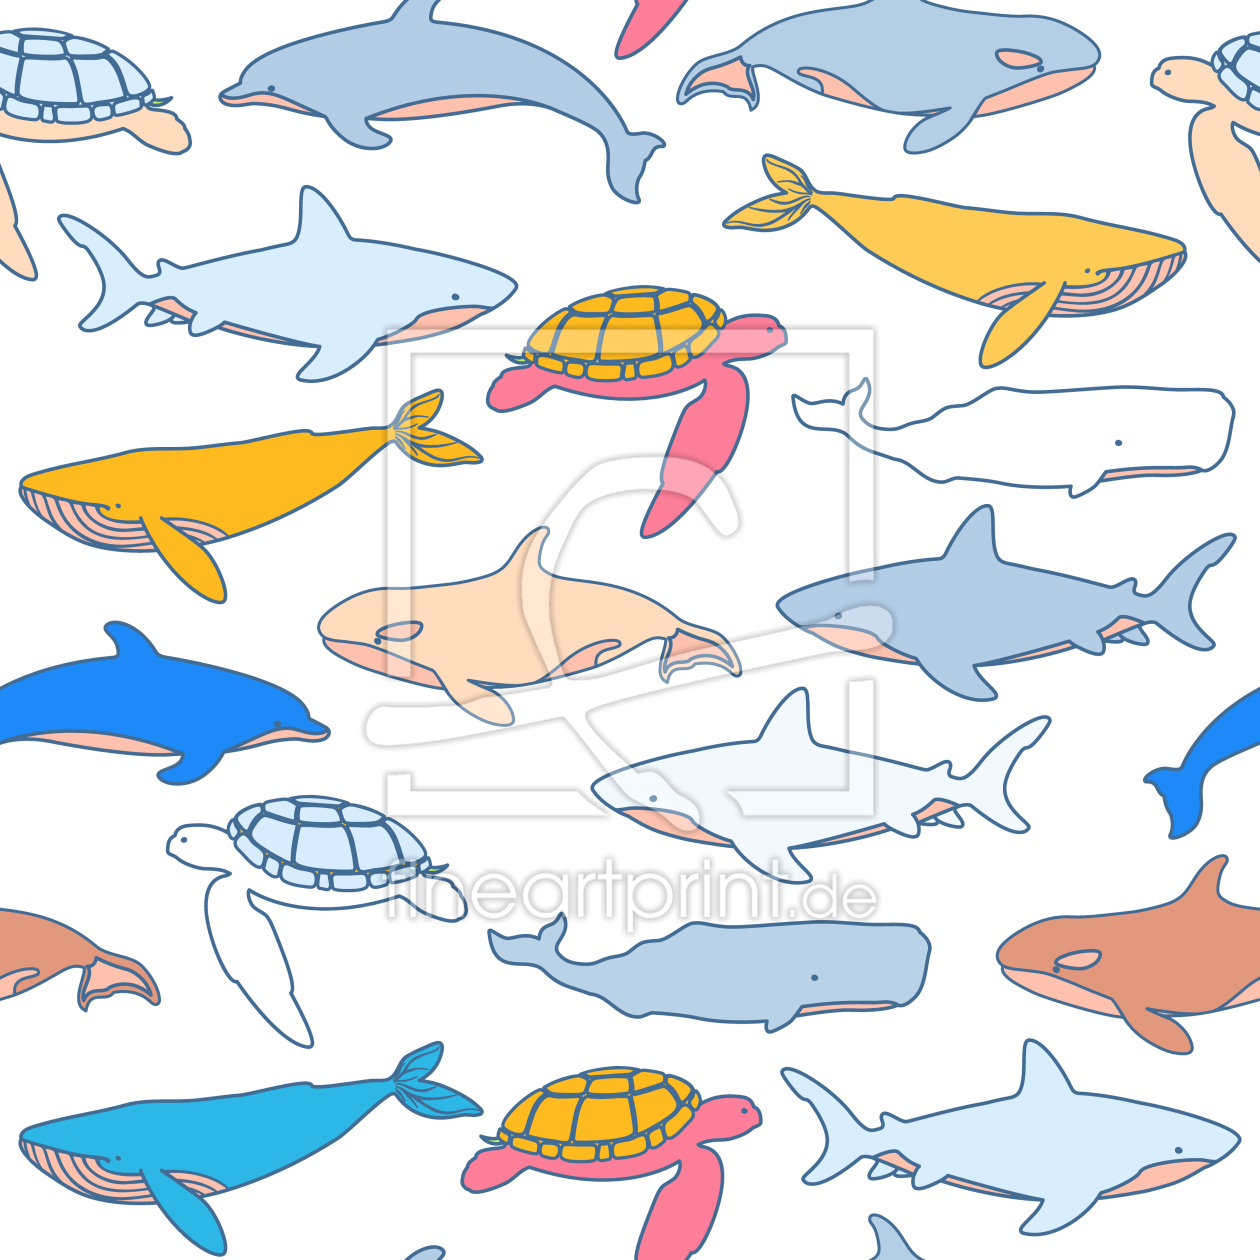 Bild-Nr.: 9010255 Suche Nach Meerestieren erstellt von patterndesigns-com